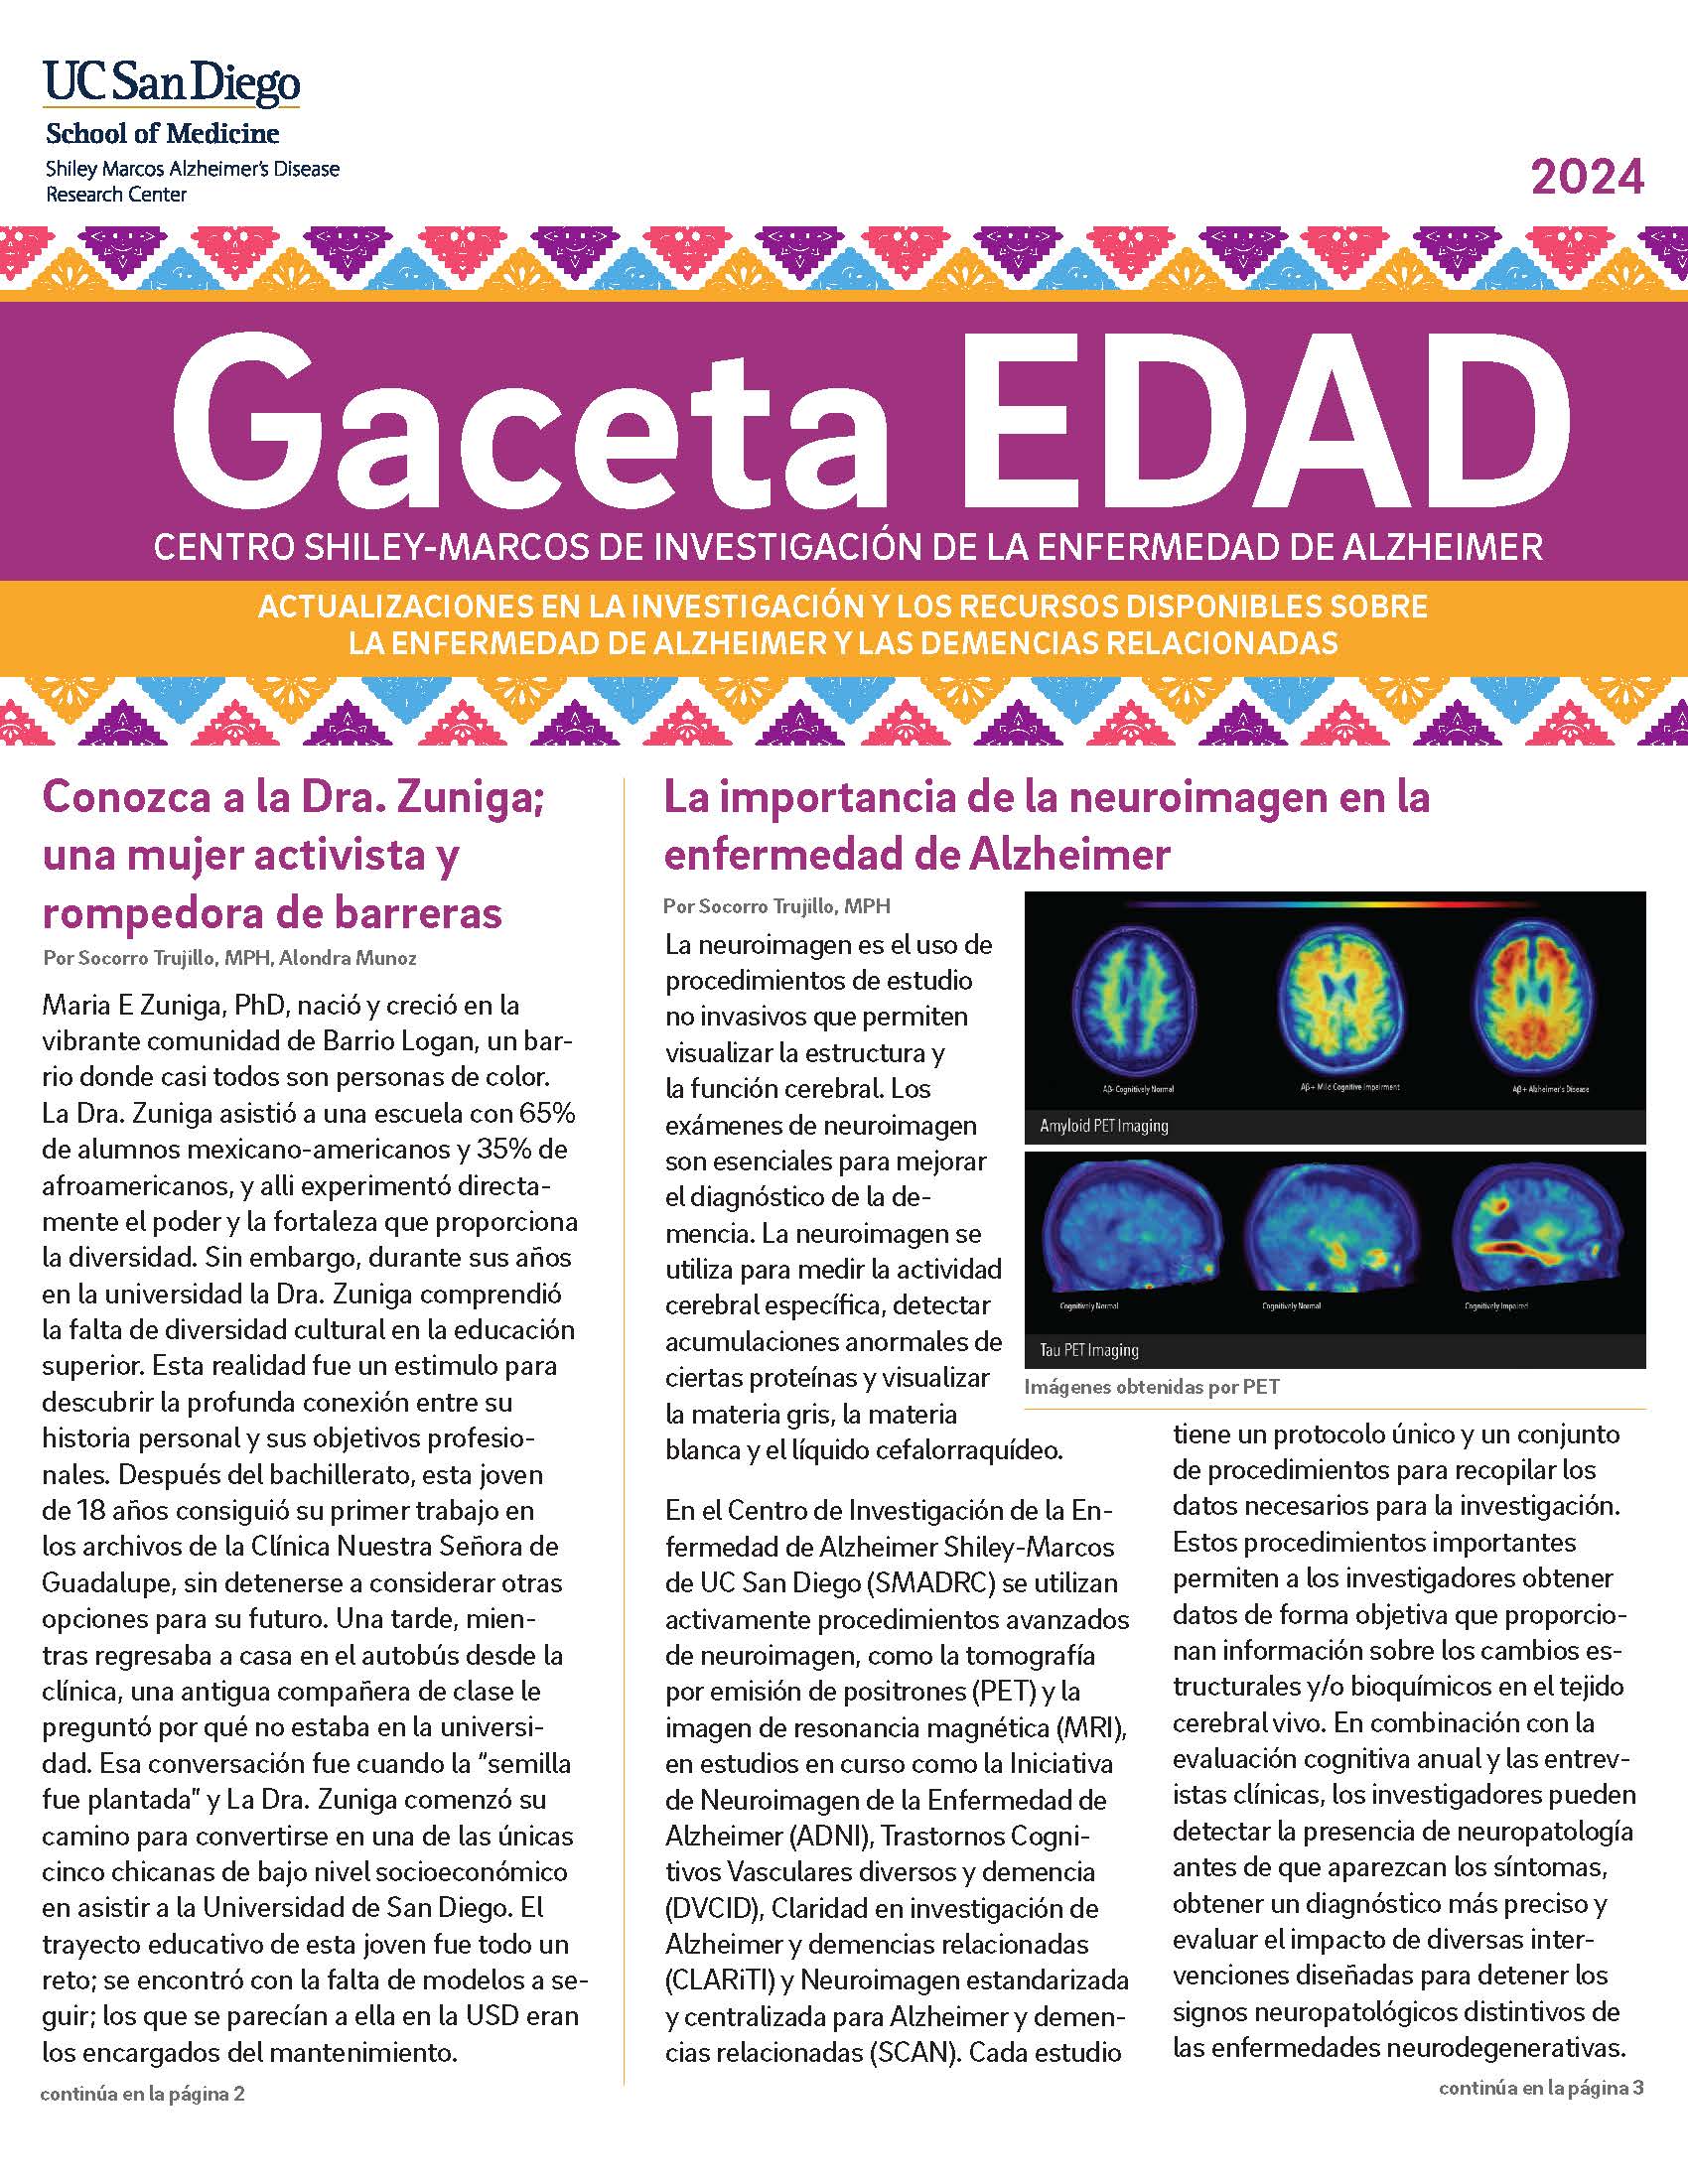 GacetaEdad2024-final_Page_01.jpg